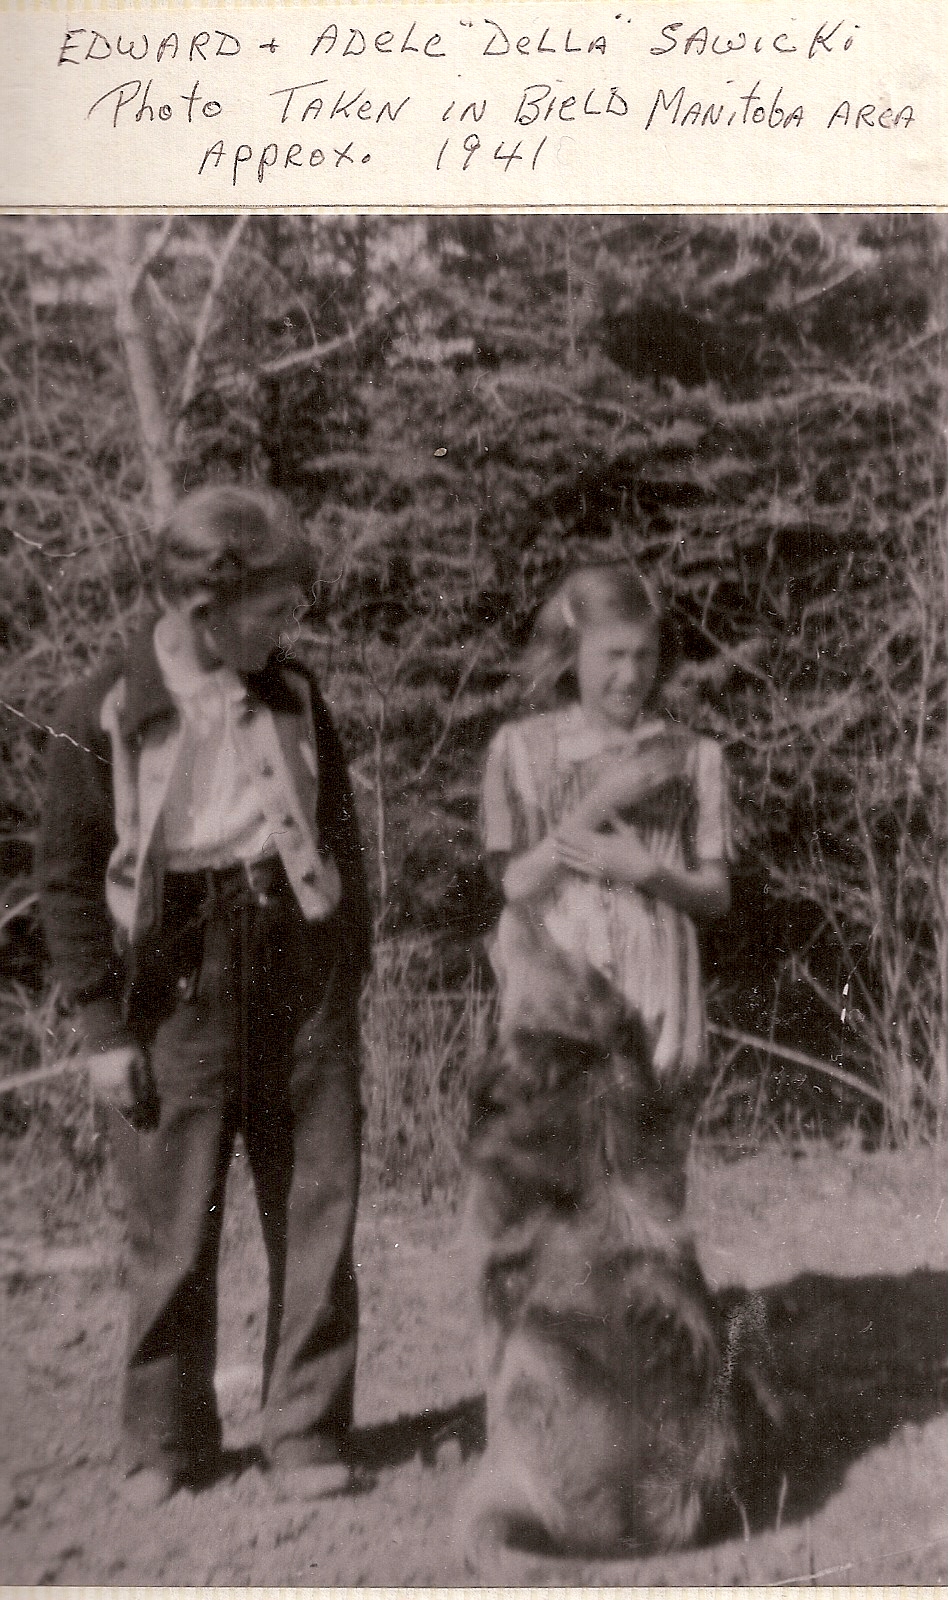 ed and della -Leons kids-1941